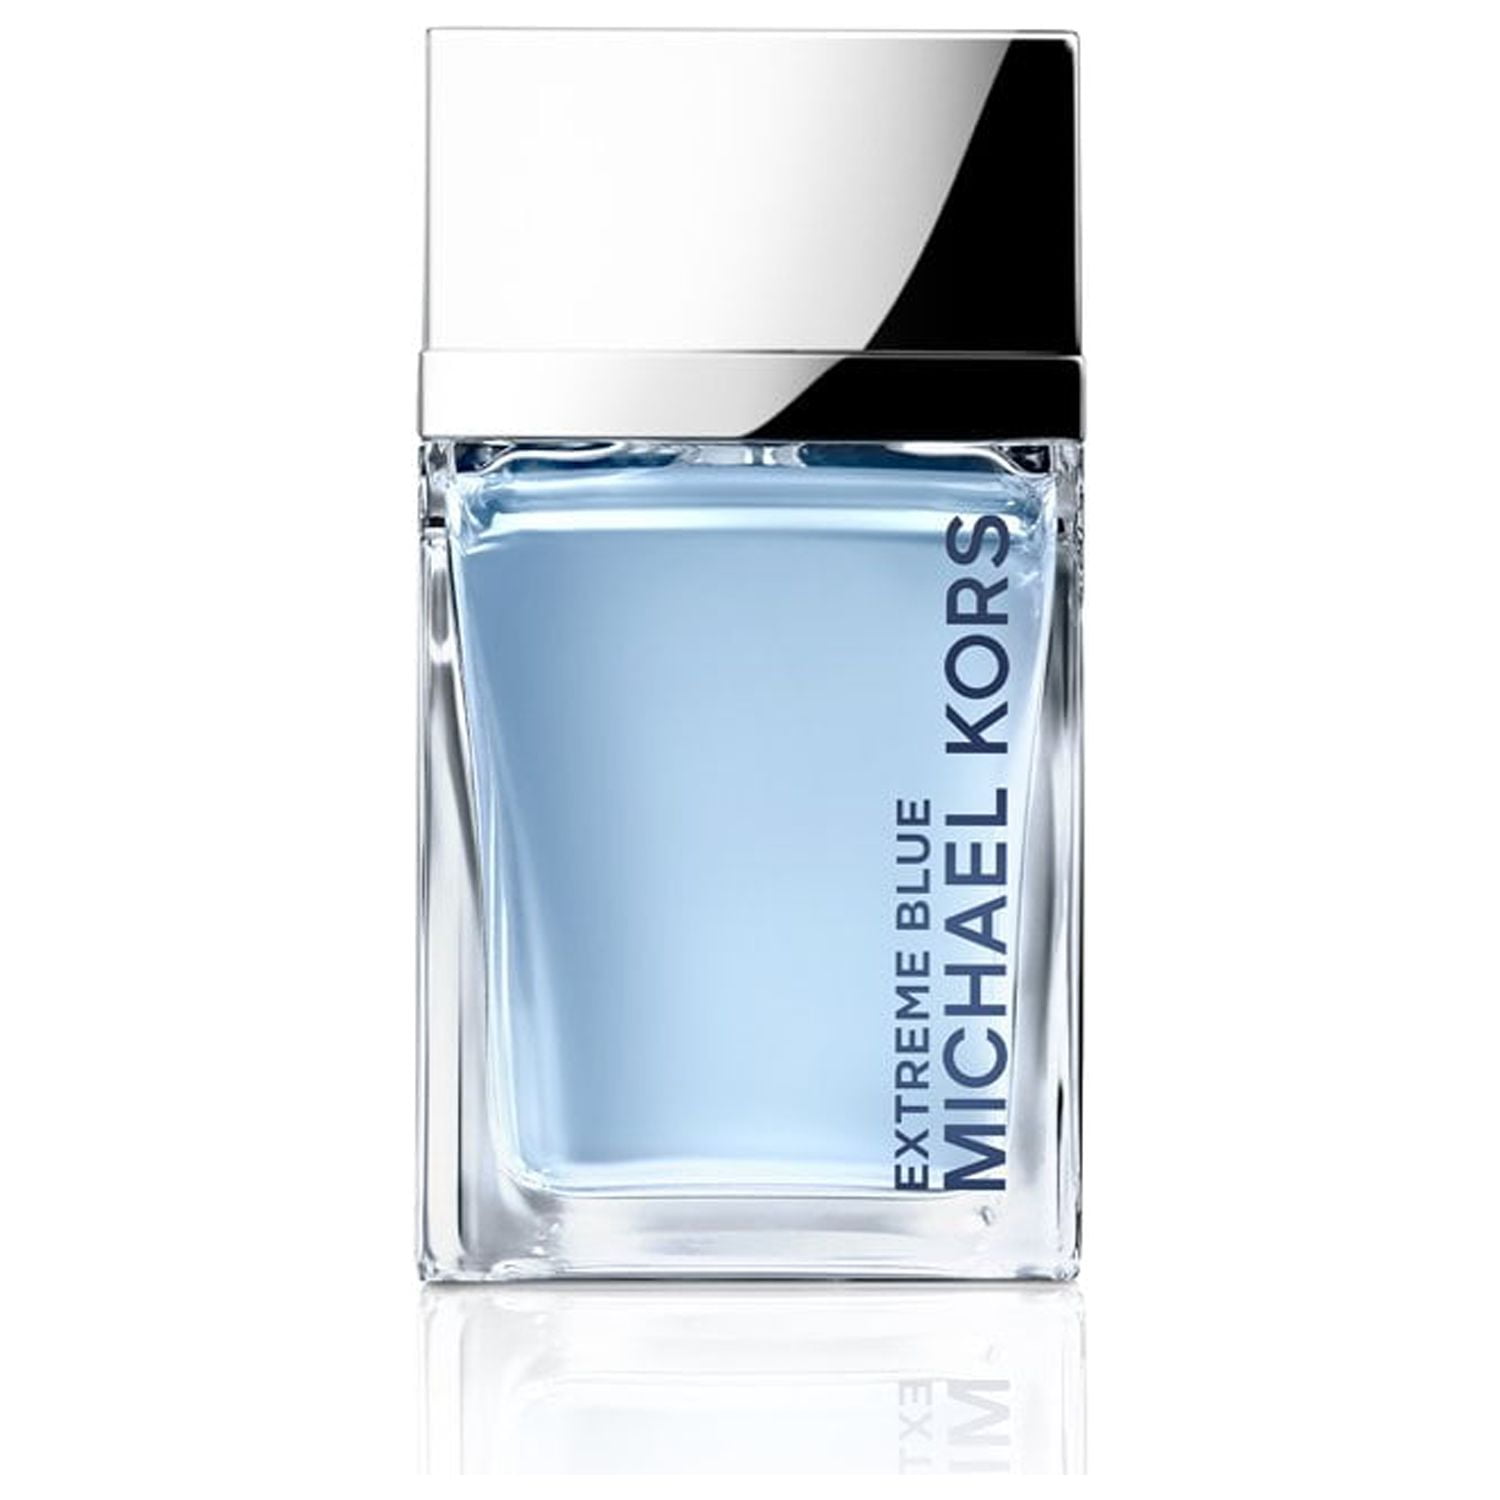 Michael Kors Extreme Blue Eau De Toilette, Perfume for Women, 1.7